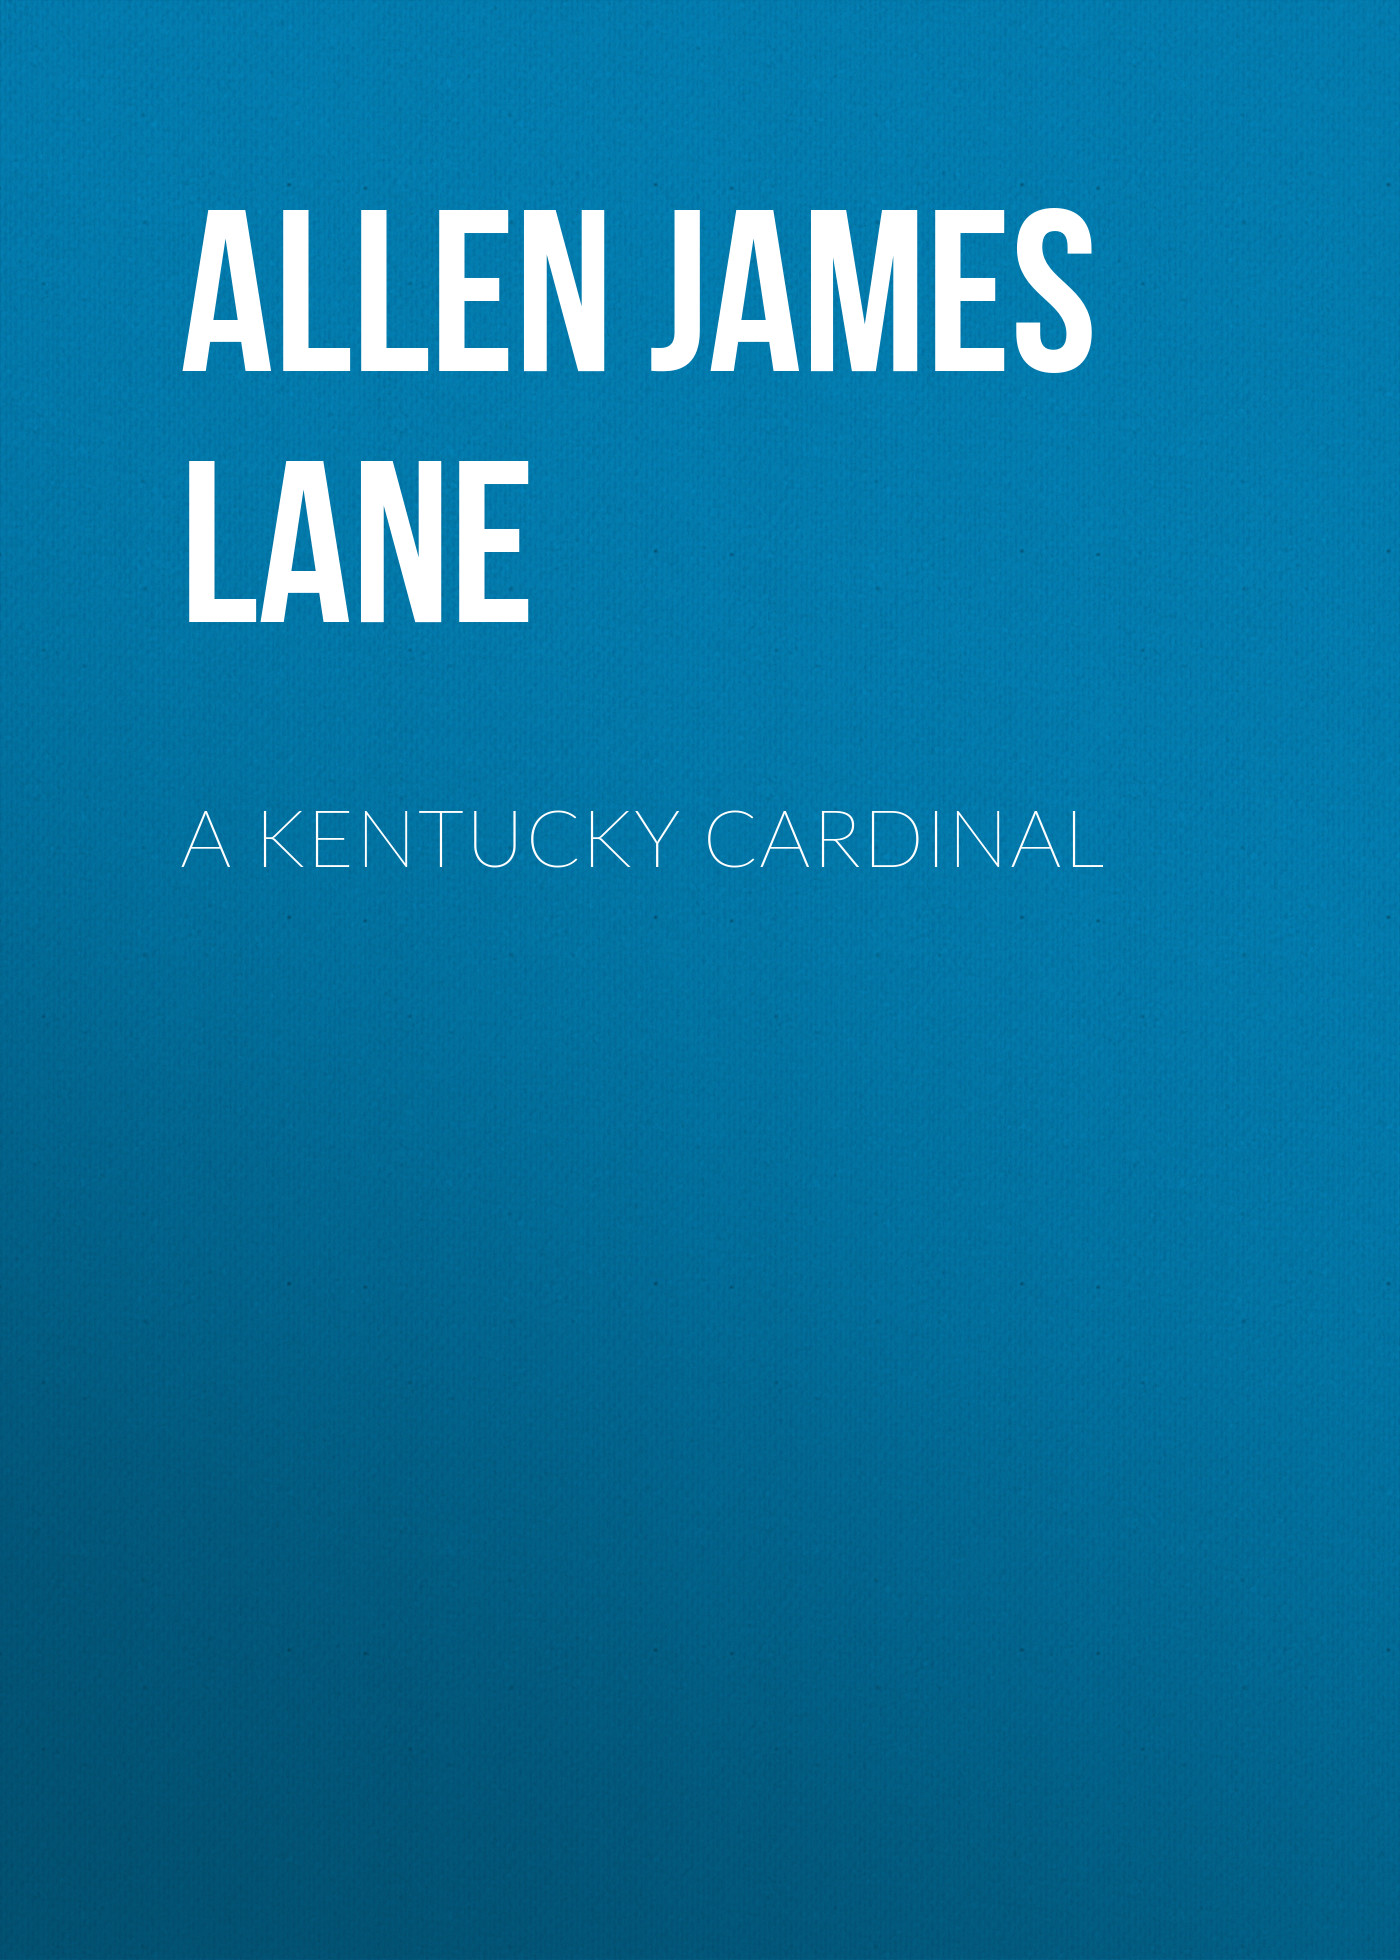 Книга A Kentucky Cardinal из серии , созданная James Allen, может относится к жанру Зарубежная классика, Зарубежная старинная литература. Стоимость электронной книги A Kentucky Cardinal с идентификатором 36365078 составляет 0 руб.